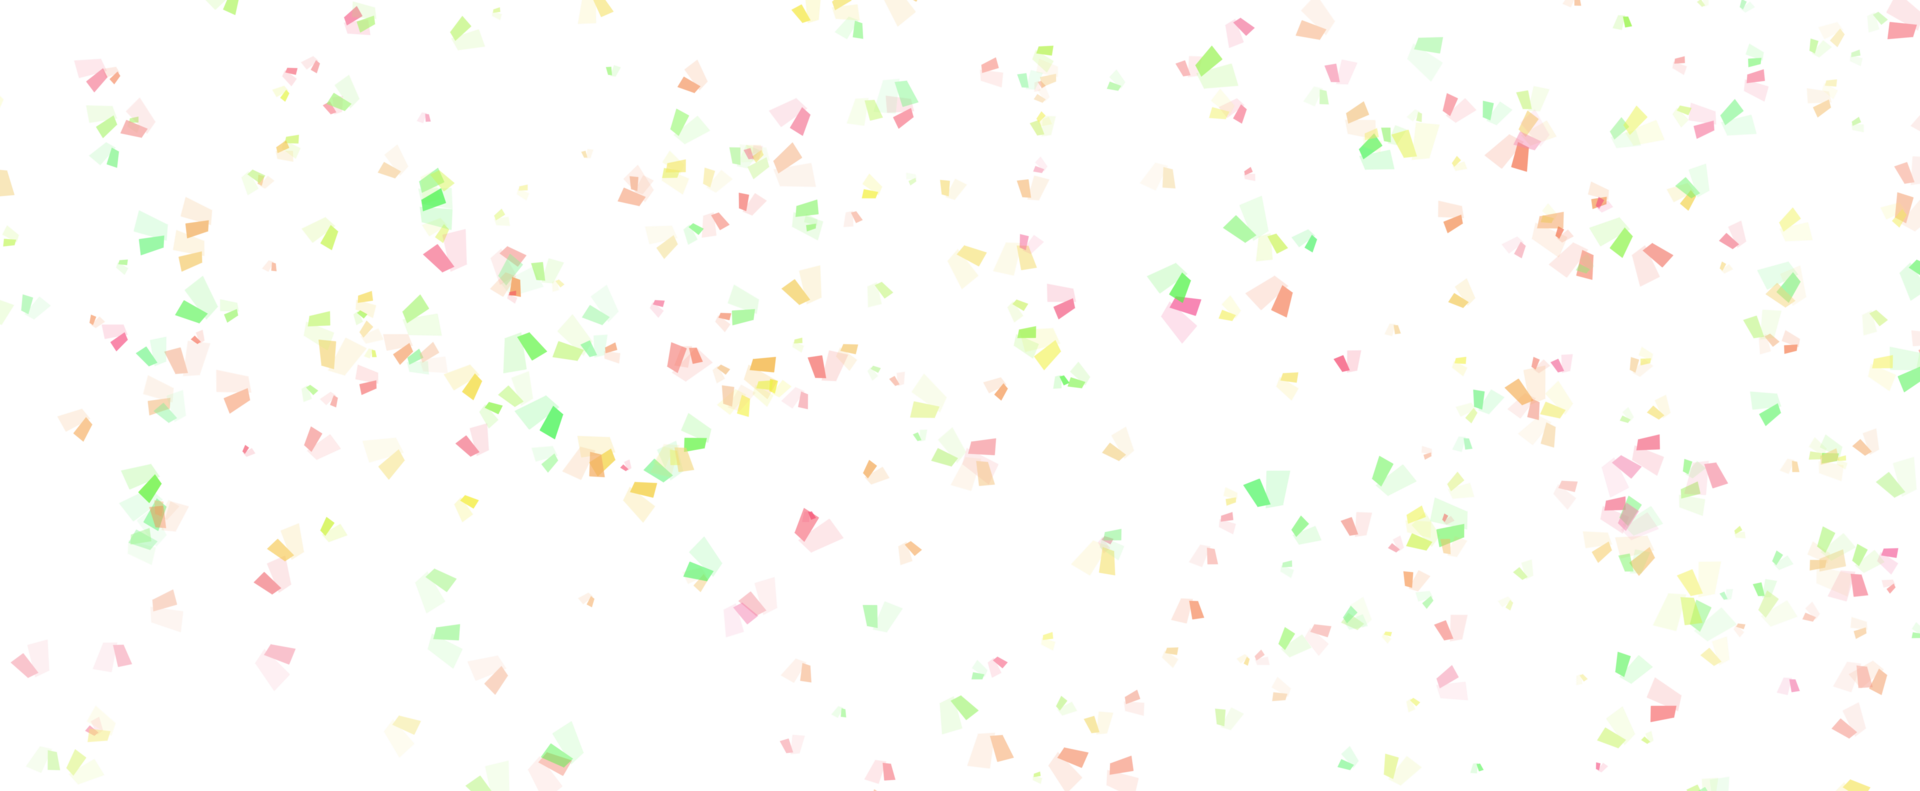 Memphis ronde confetti feestelijk achtergrond in cyaan blauw, roze en geel. kinderachtig patroon en bokeh confetti cirkels decoratie vakantie achtergrond. png